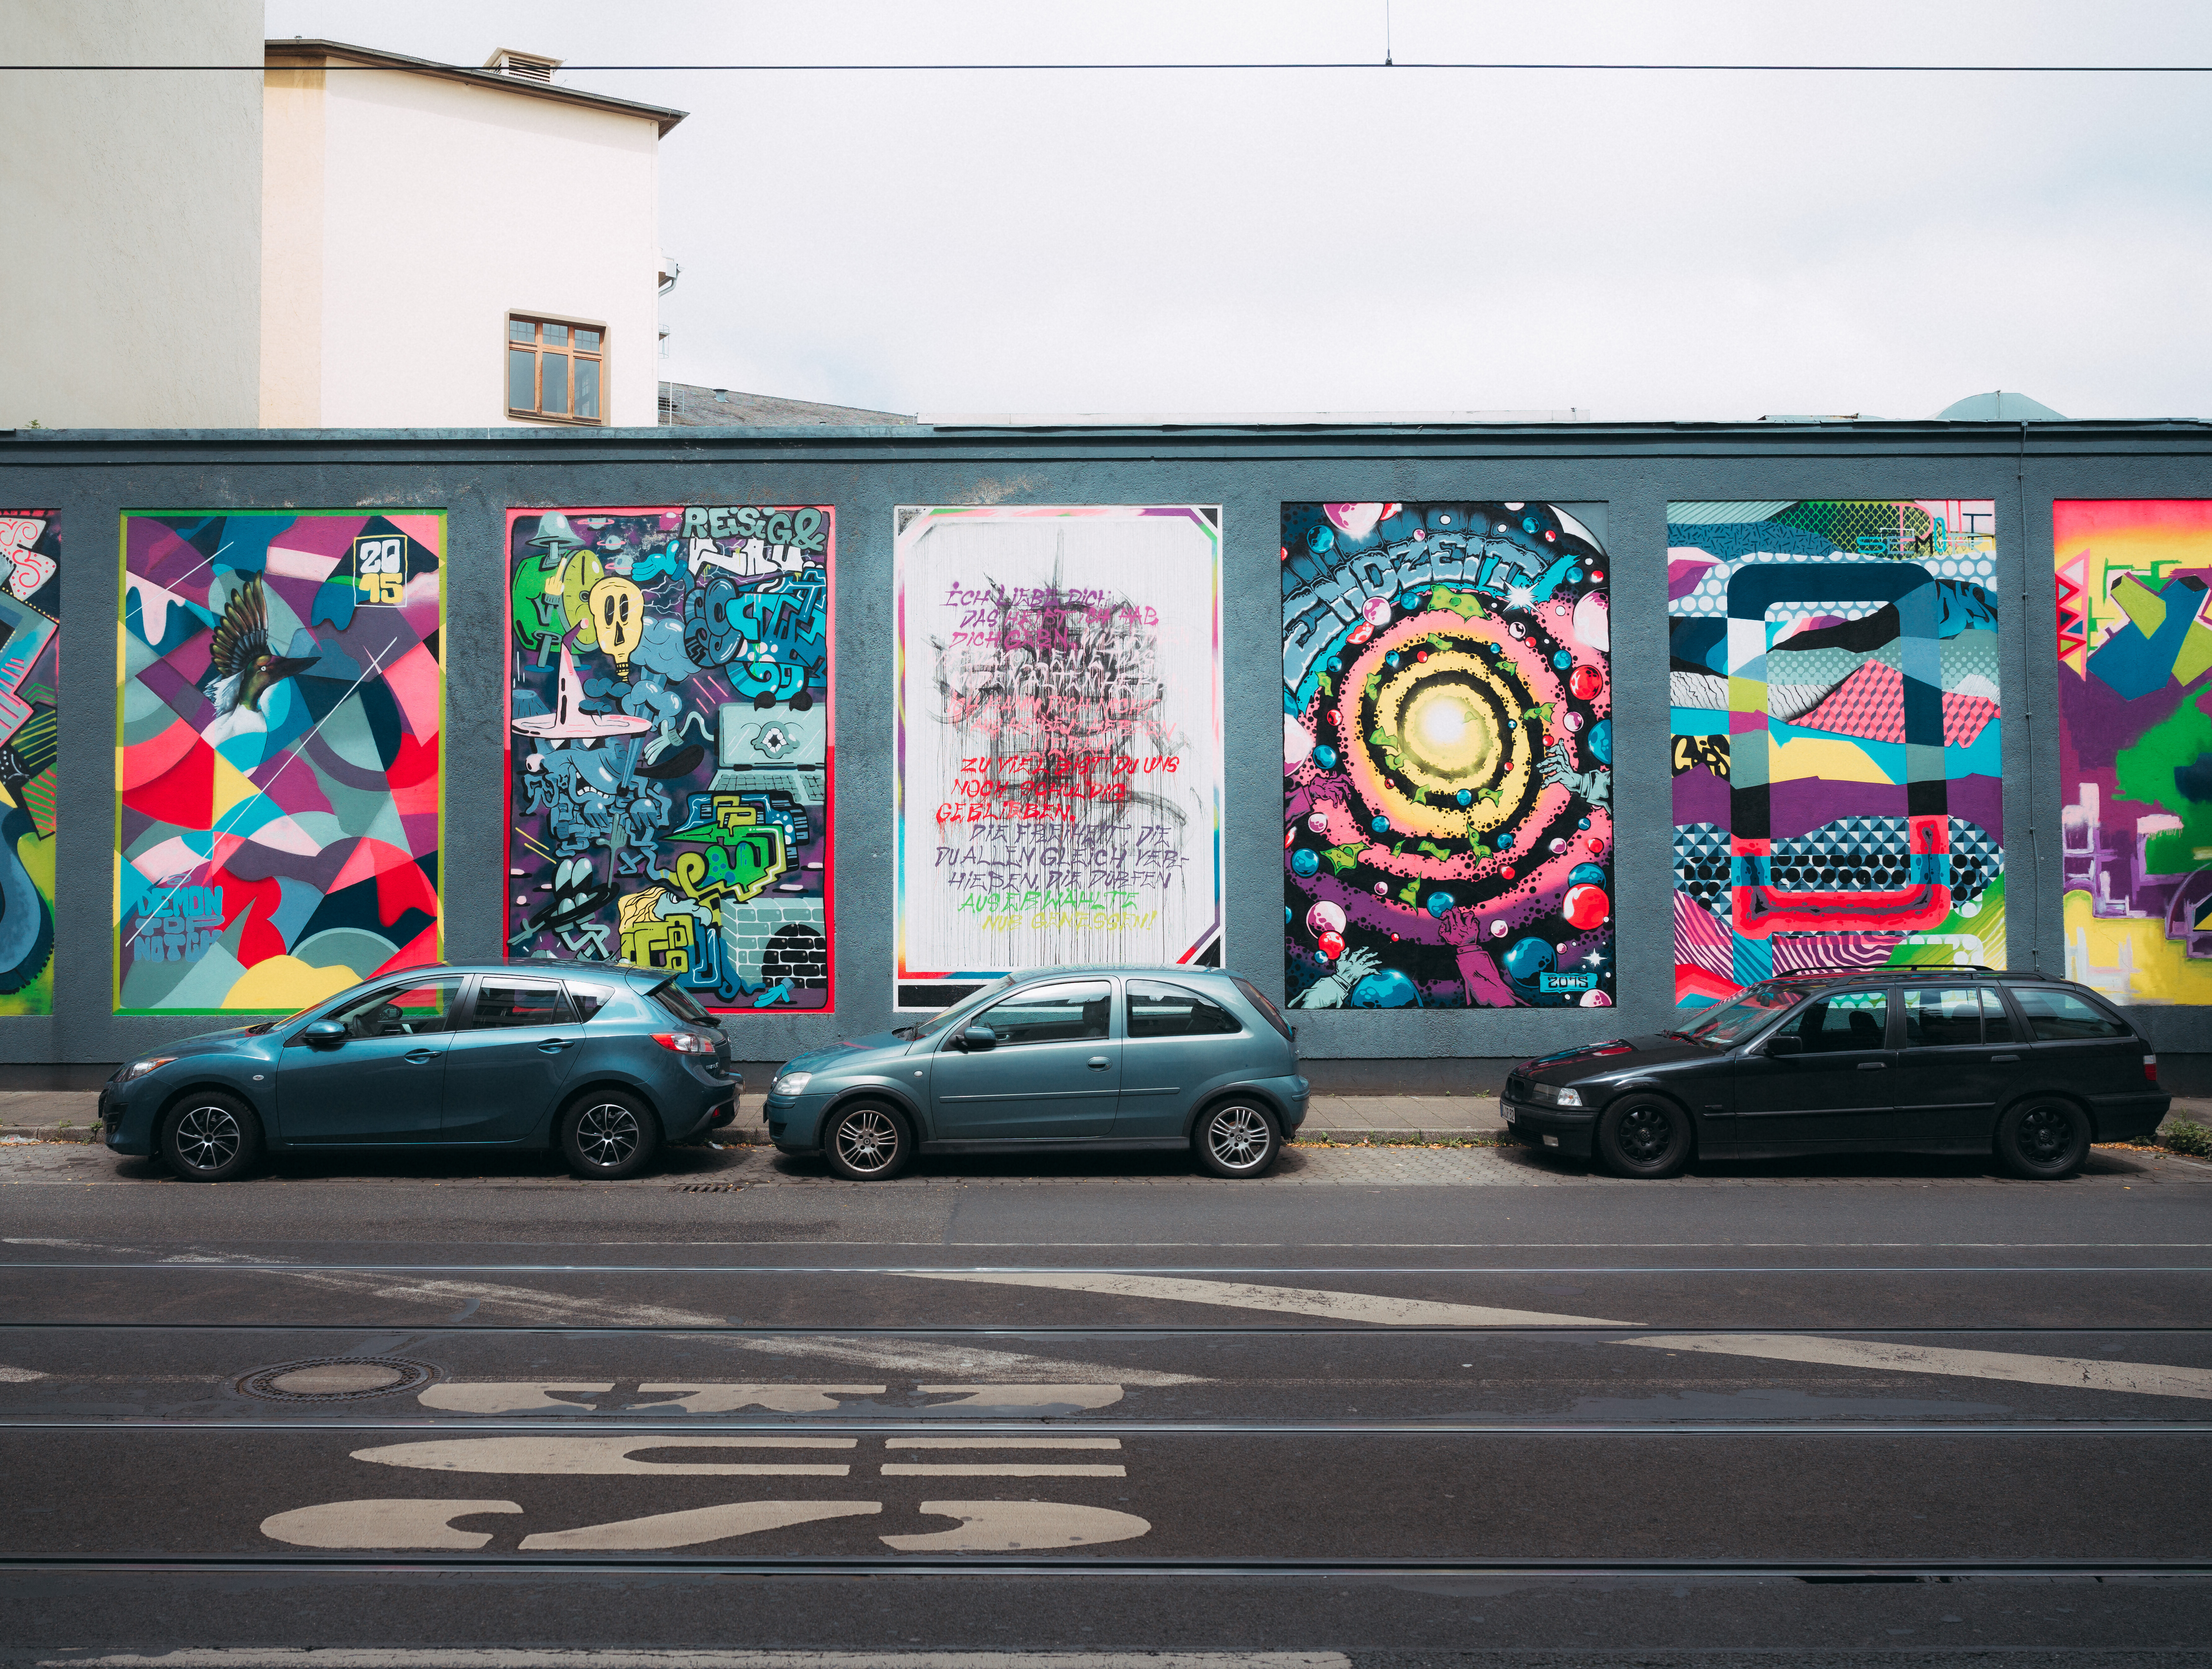 Bunte Street-Art-Mauer in Düsseldorf mit Kunstwerken wie in einer Galerie. © Tourismus NRW e.V./Johannes Höhn